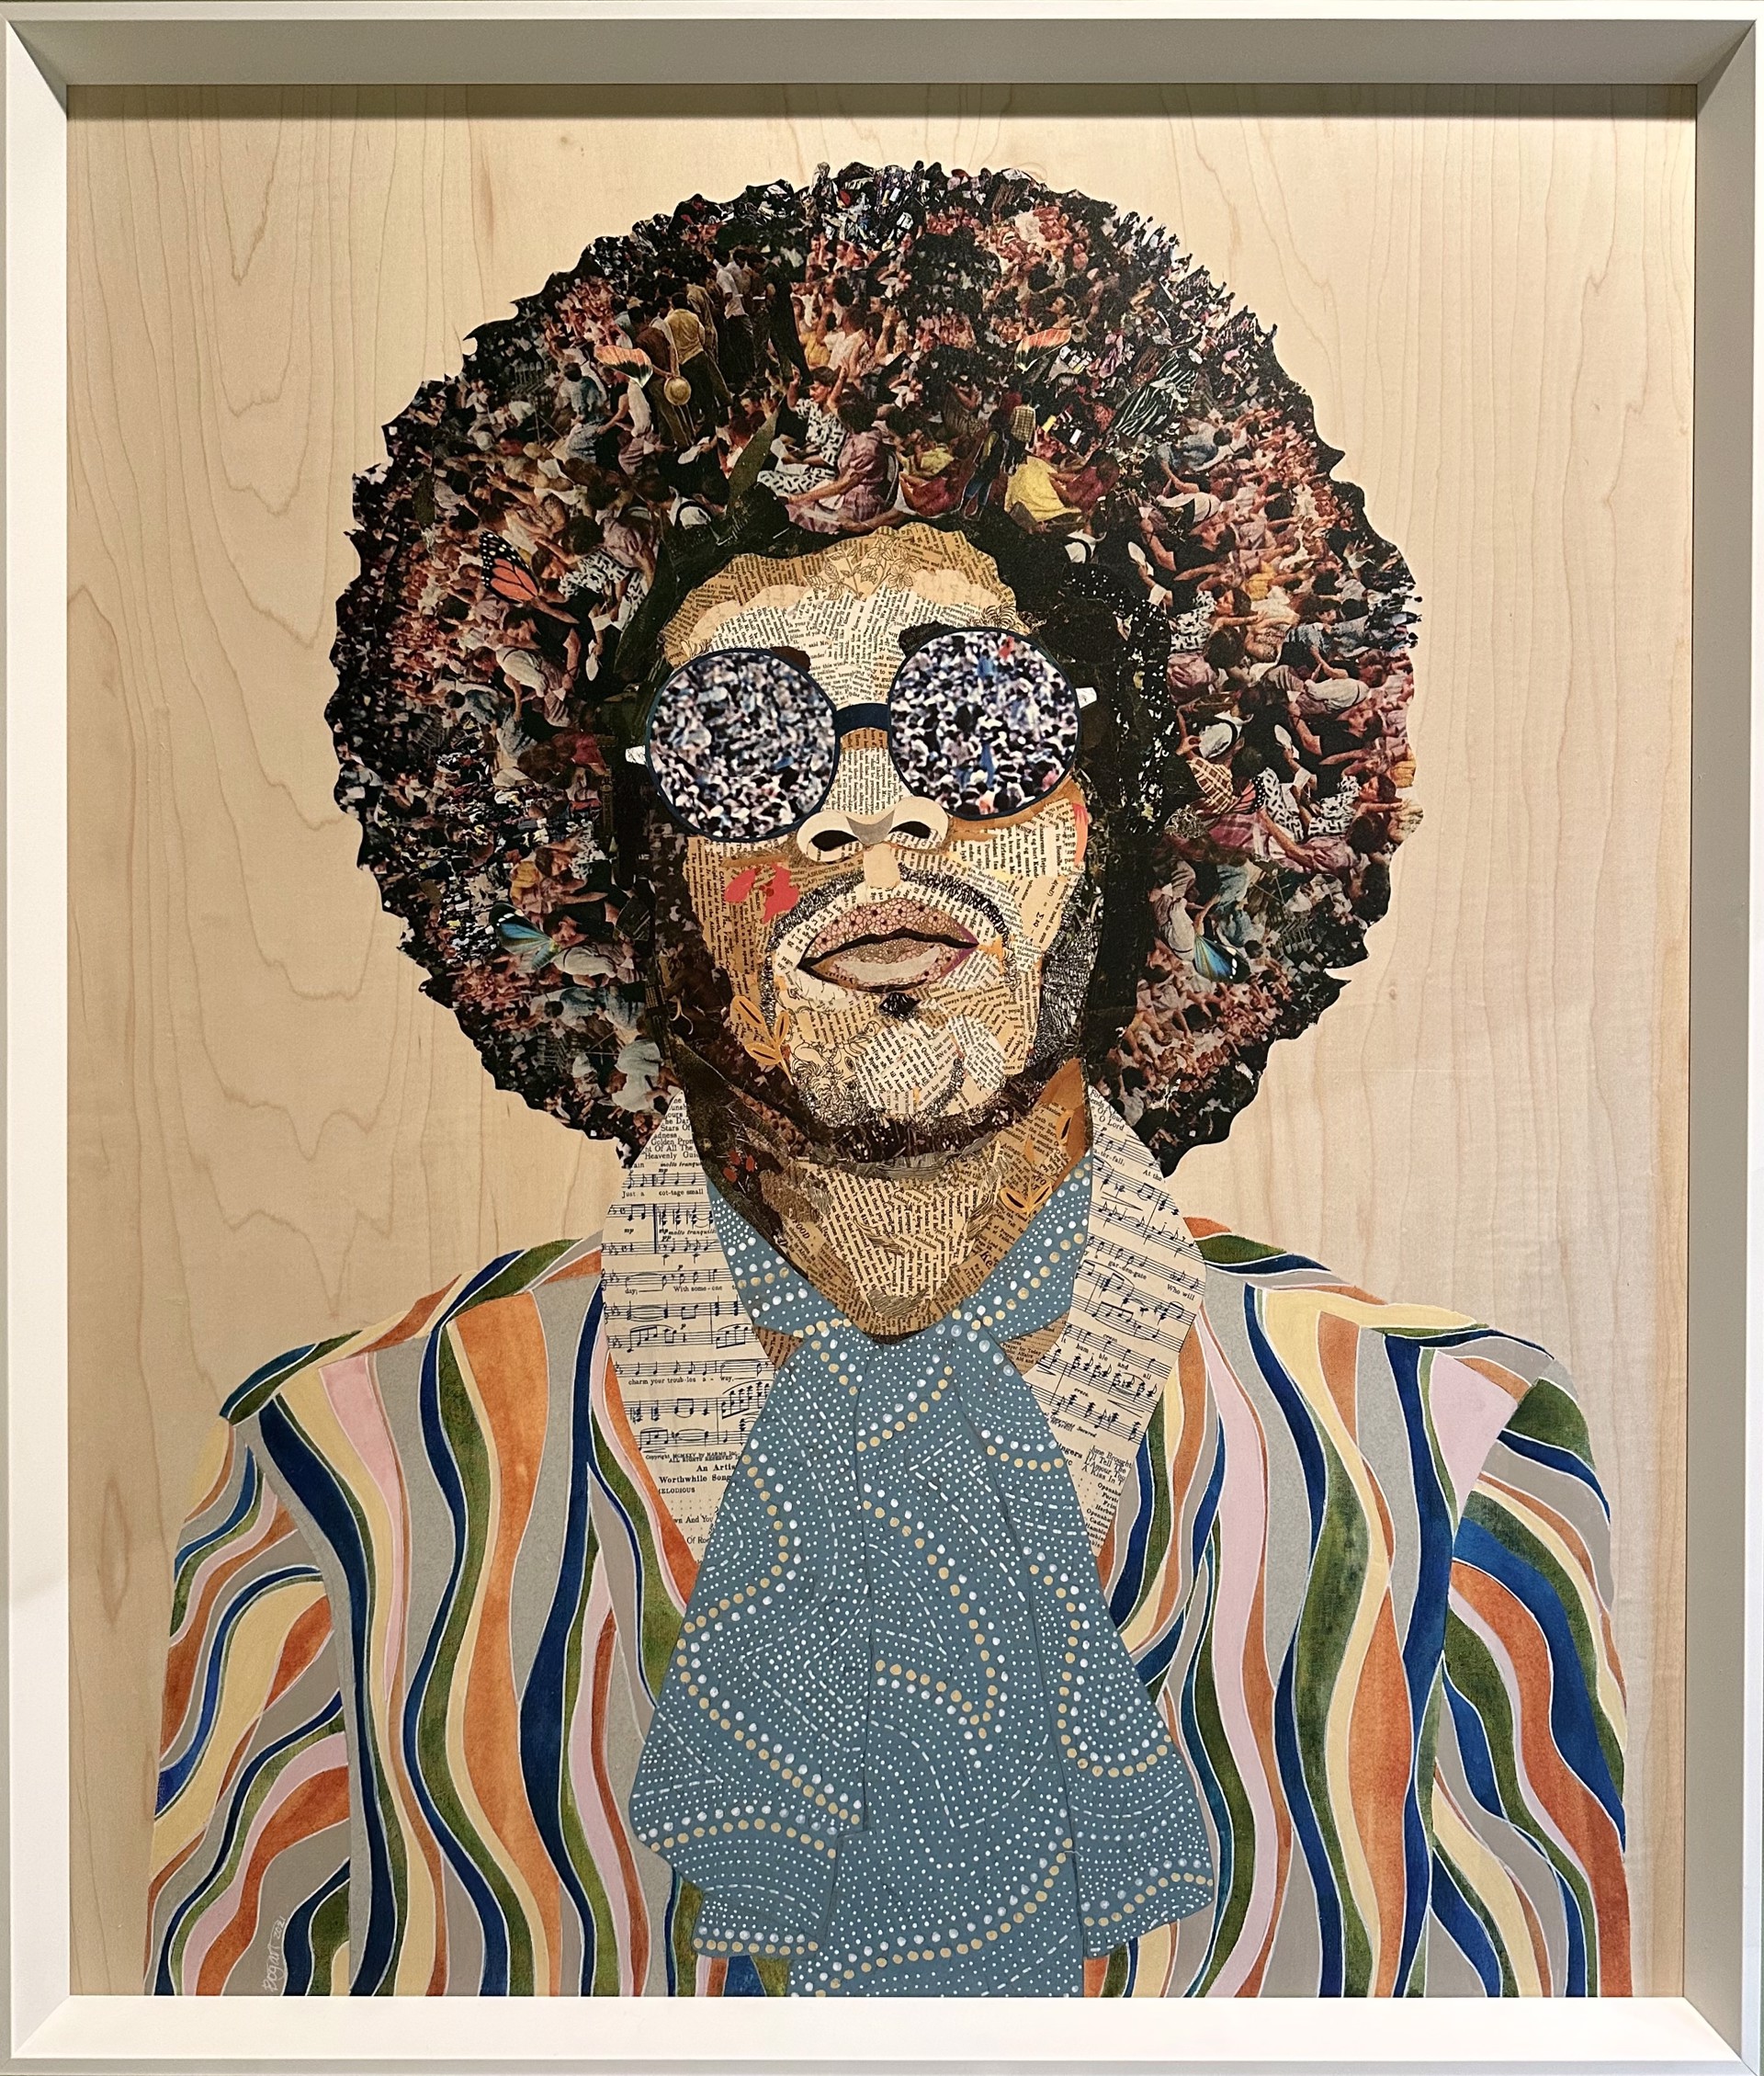 Jimi Hendrix (archival print) by Brenda Bogart